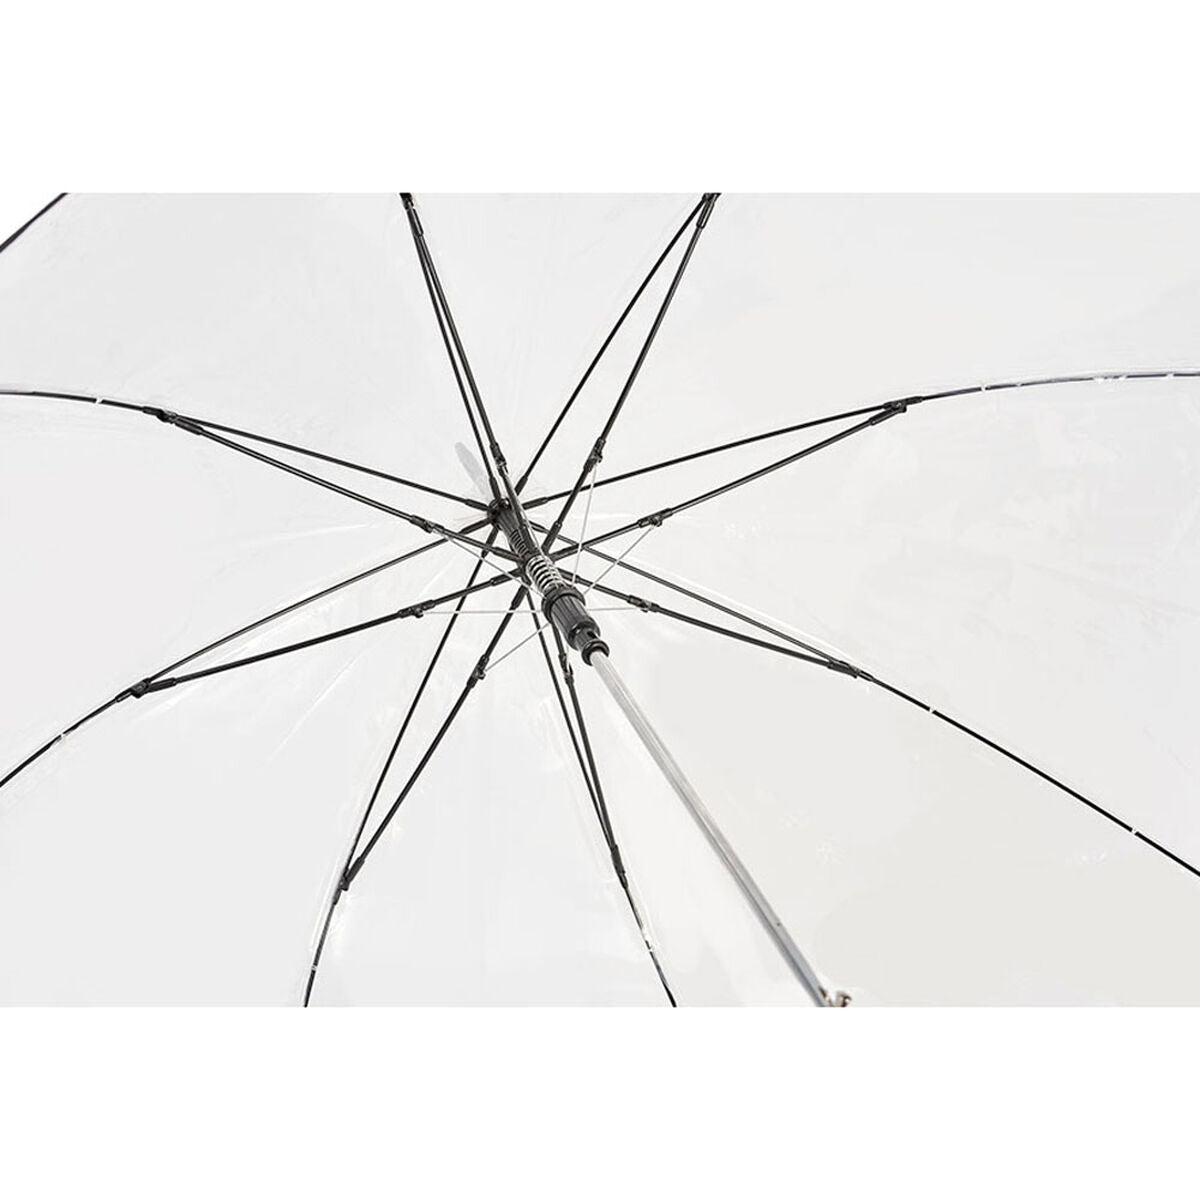 Parapluie automatique C-Collection 429 Transparent Ø 93 cm Long